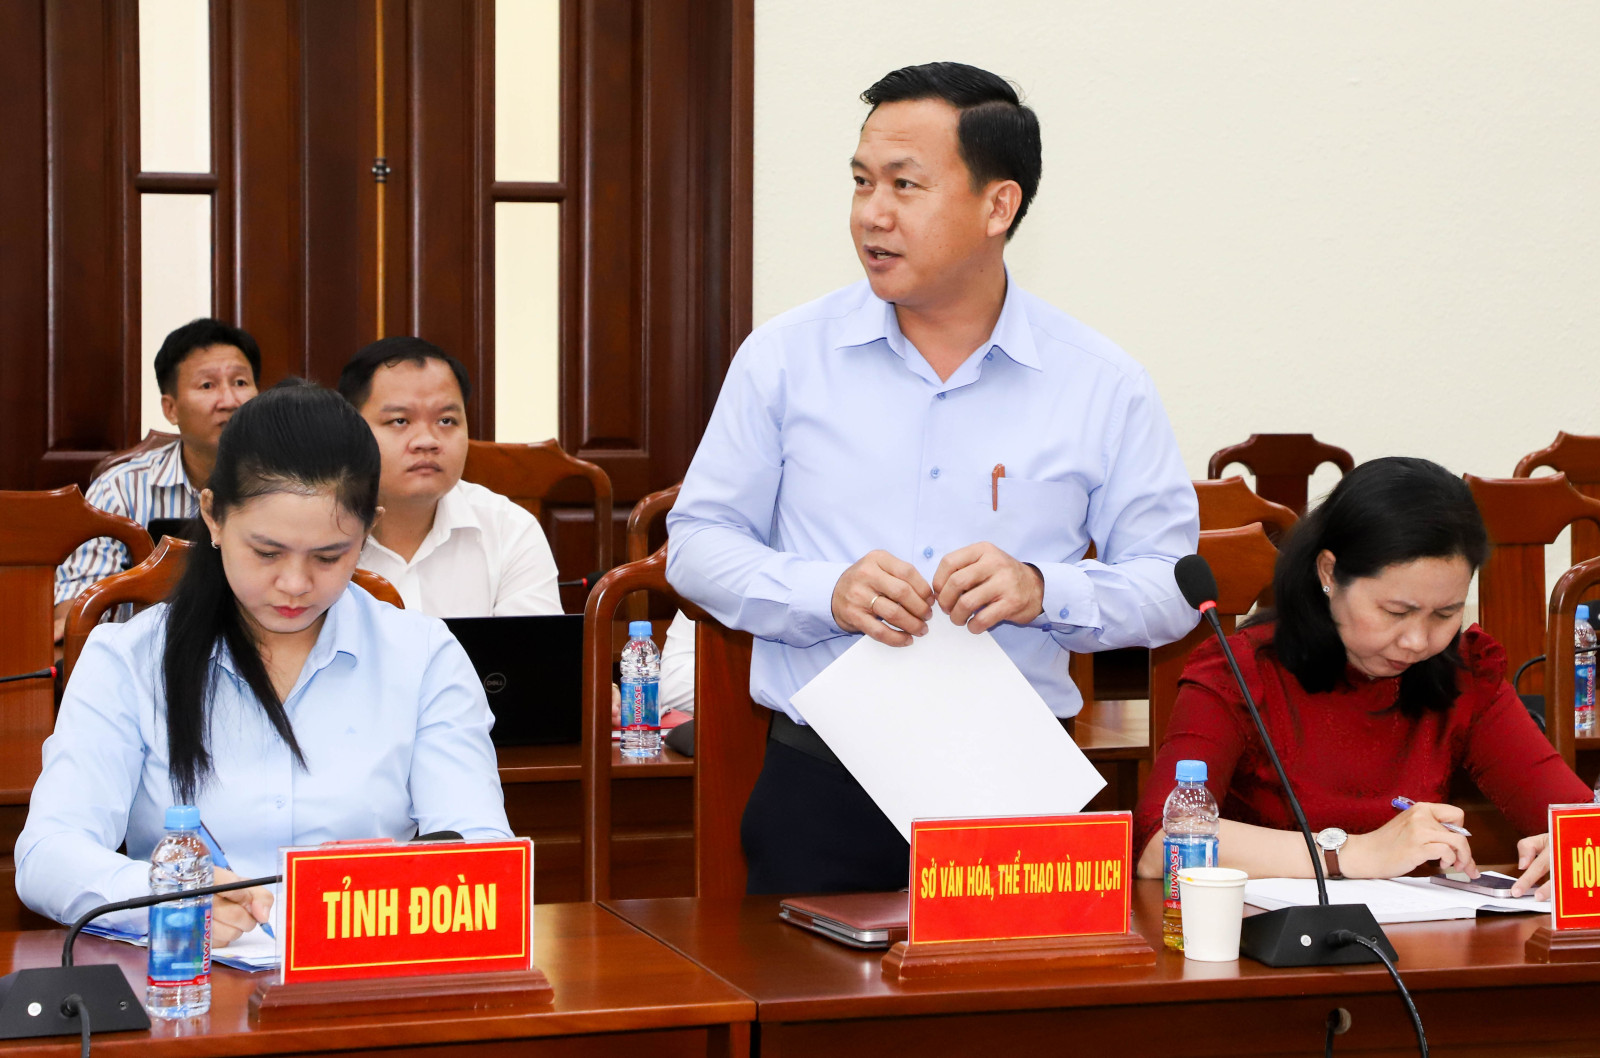 Đồng chí Bùi Hữu Toàn, Giám đốc Sở Văn hóa - Thể thao Du lịch tỉnh trình bày tham luận tại hội nghị.